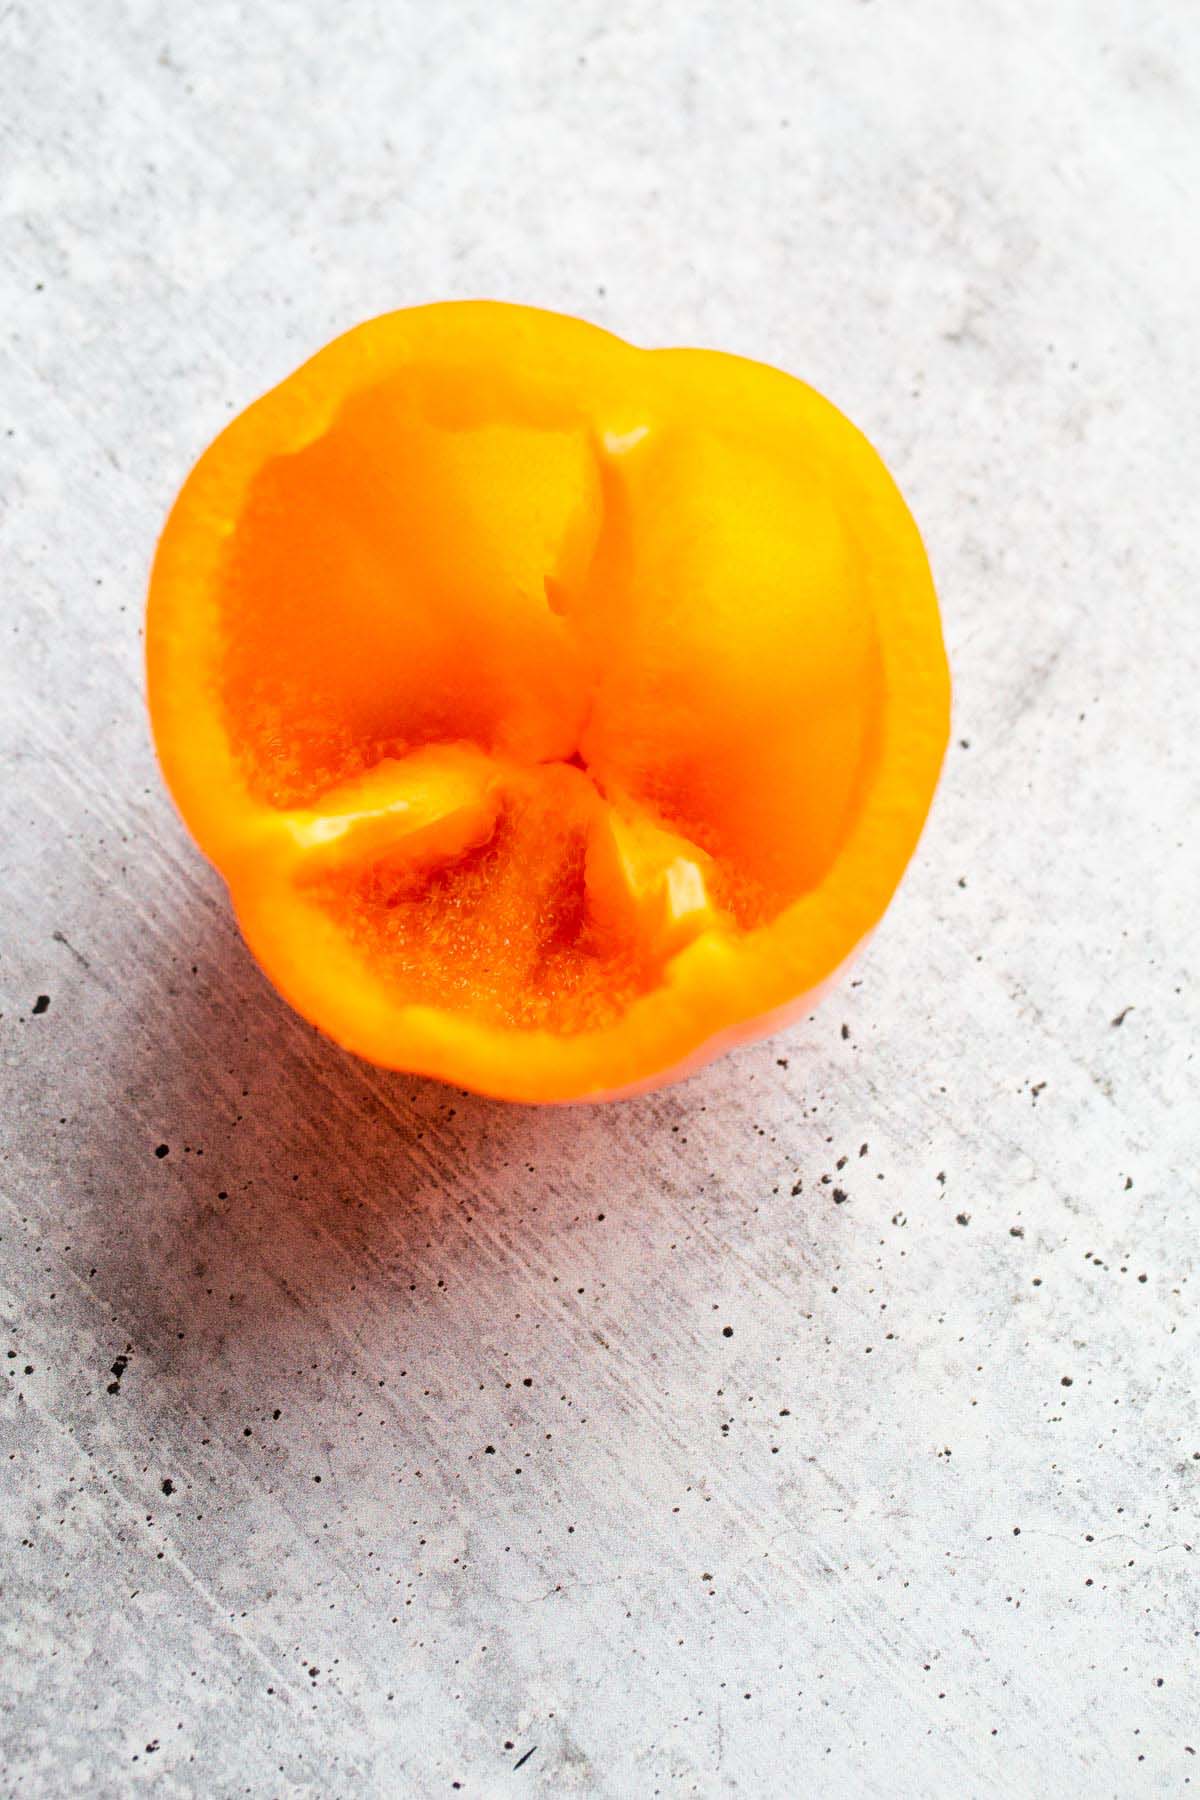 Orange bell pepper?